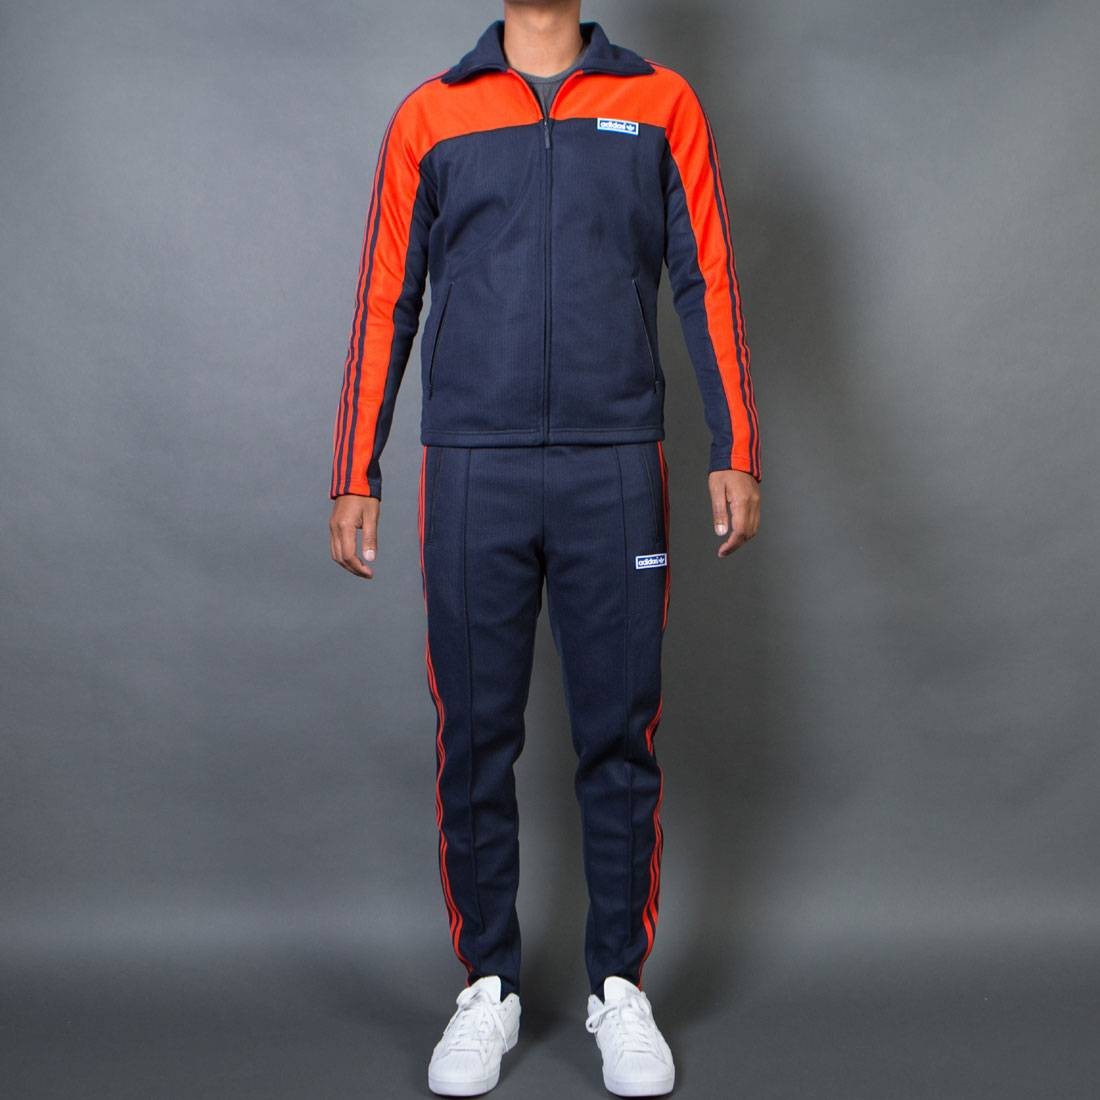 Adidas Men Originals OG Tracksuit navy legend ink bold orange